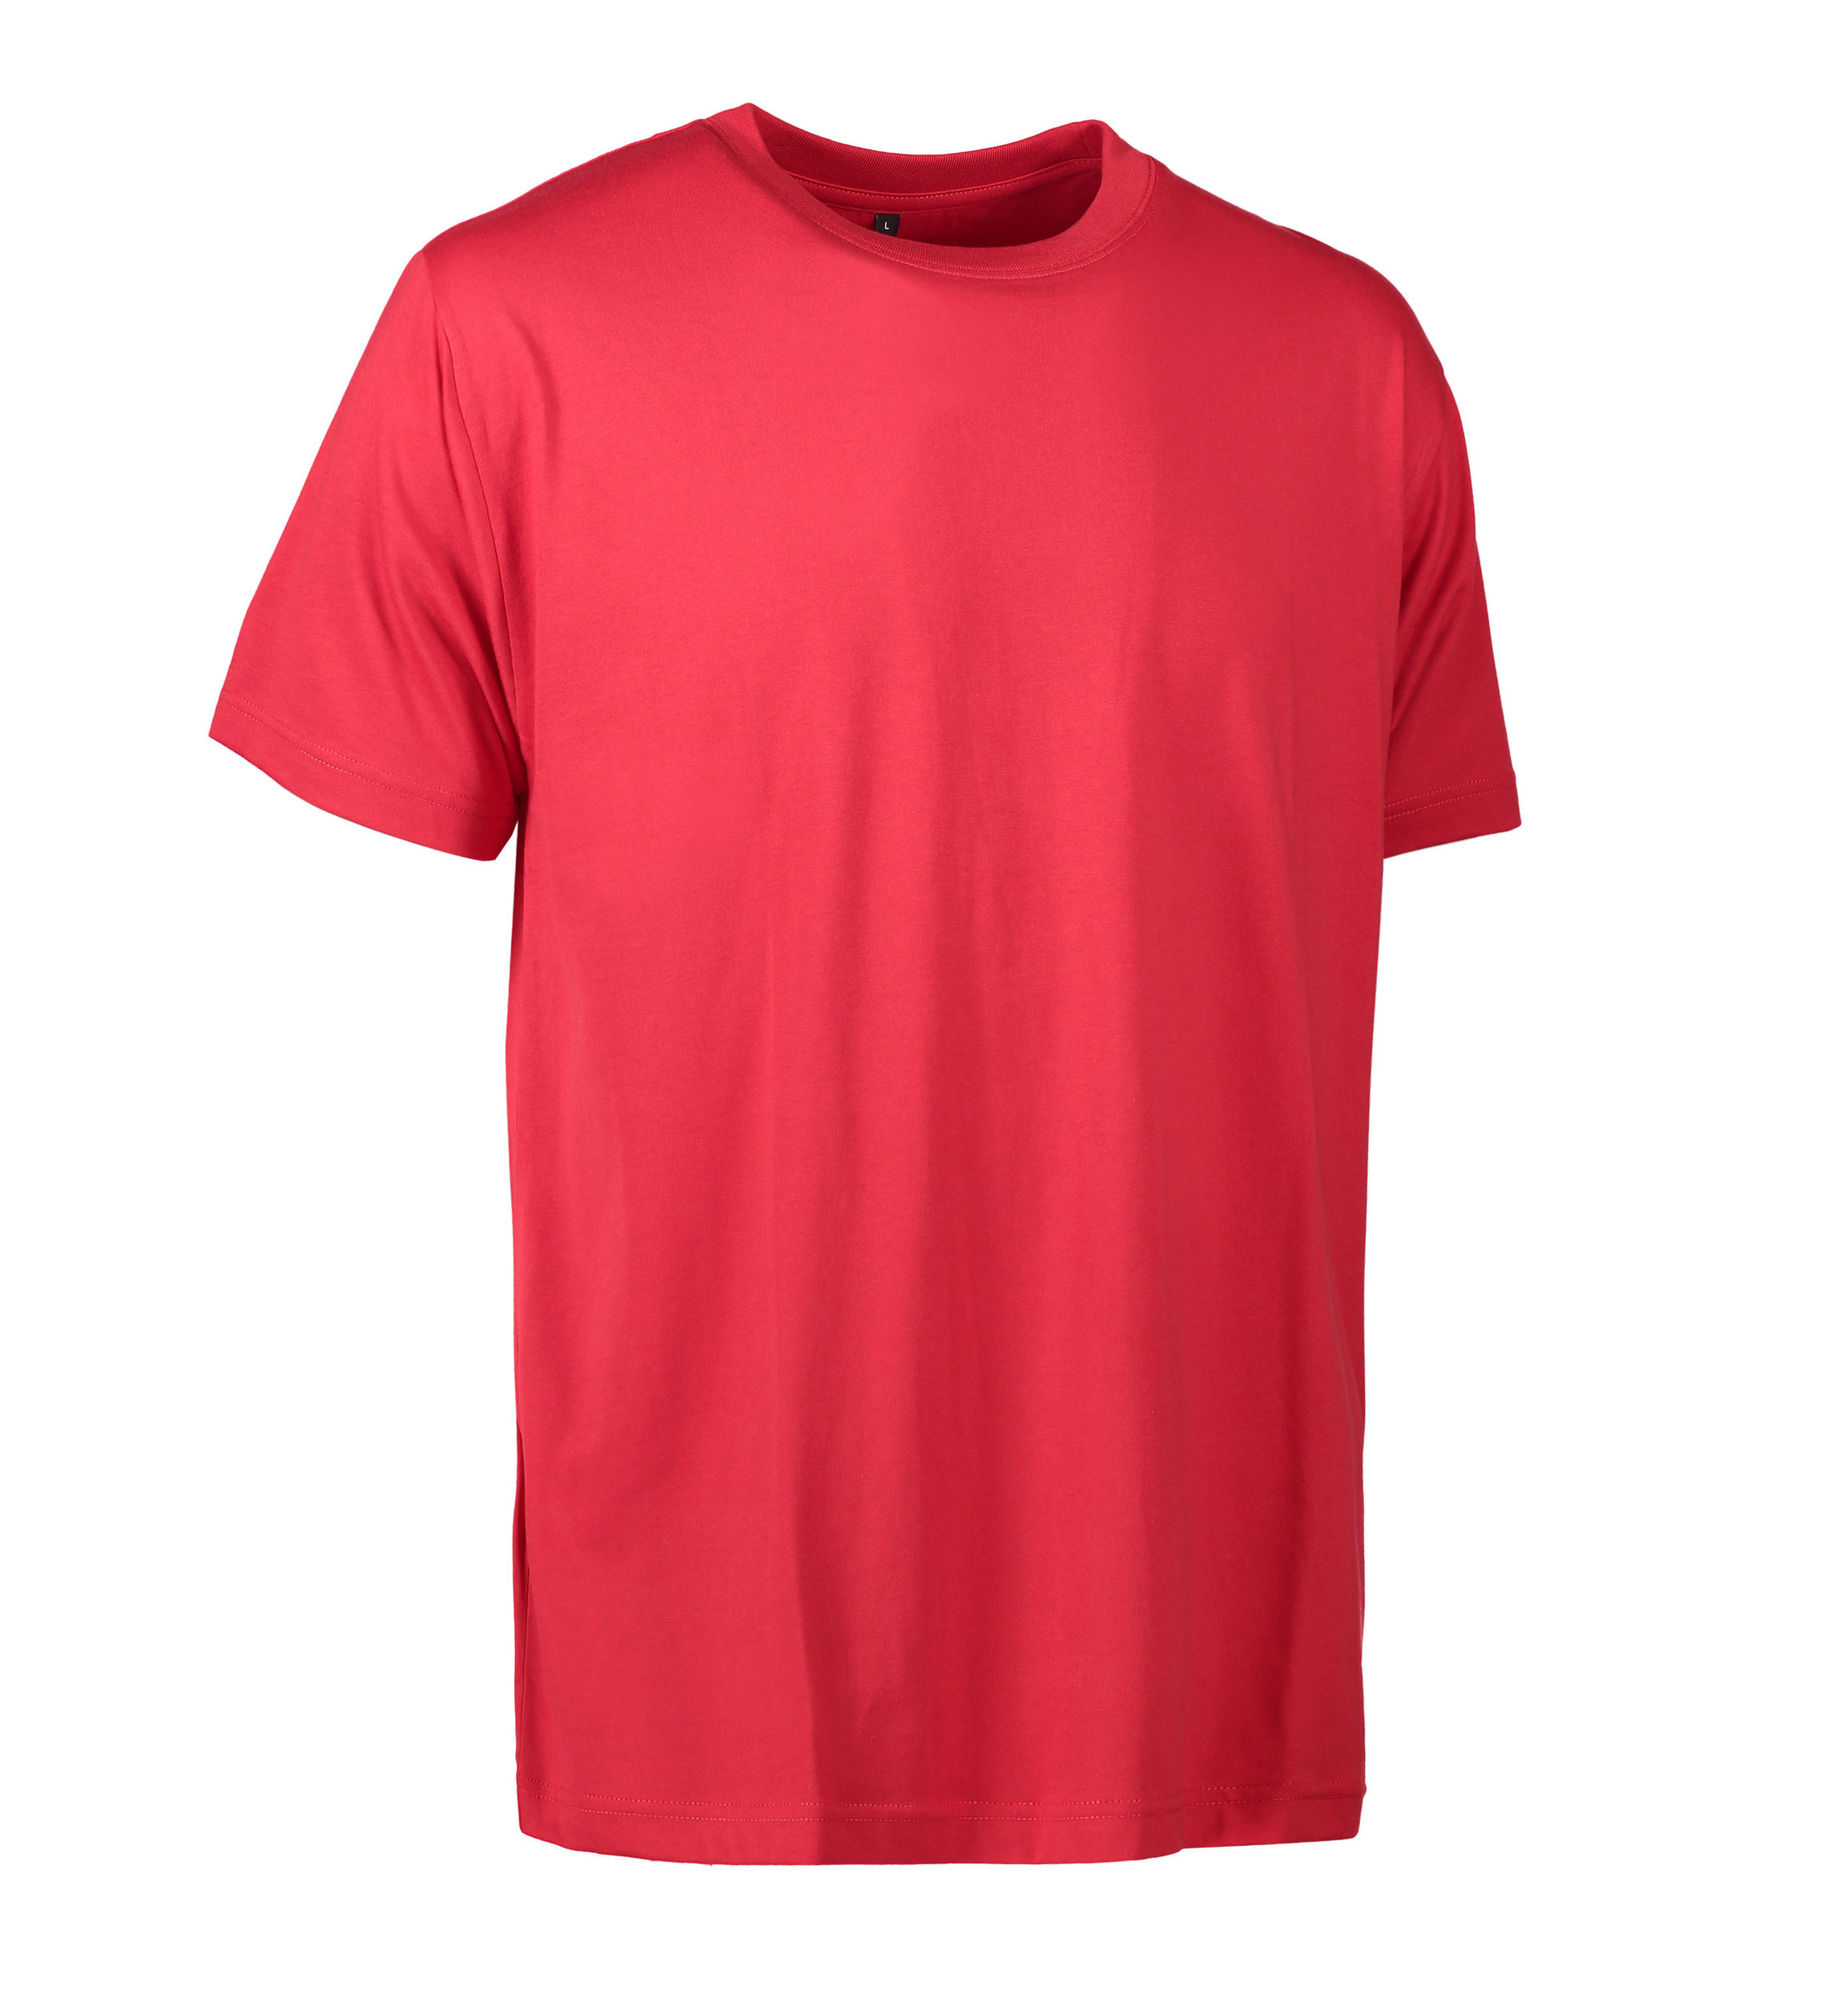 Billede af Slidstærk t-shirt i rød til mænd - XS hos Sygeplejebutikken.dk